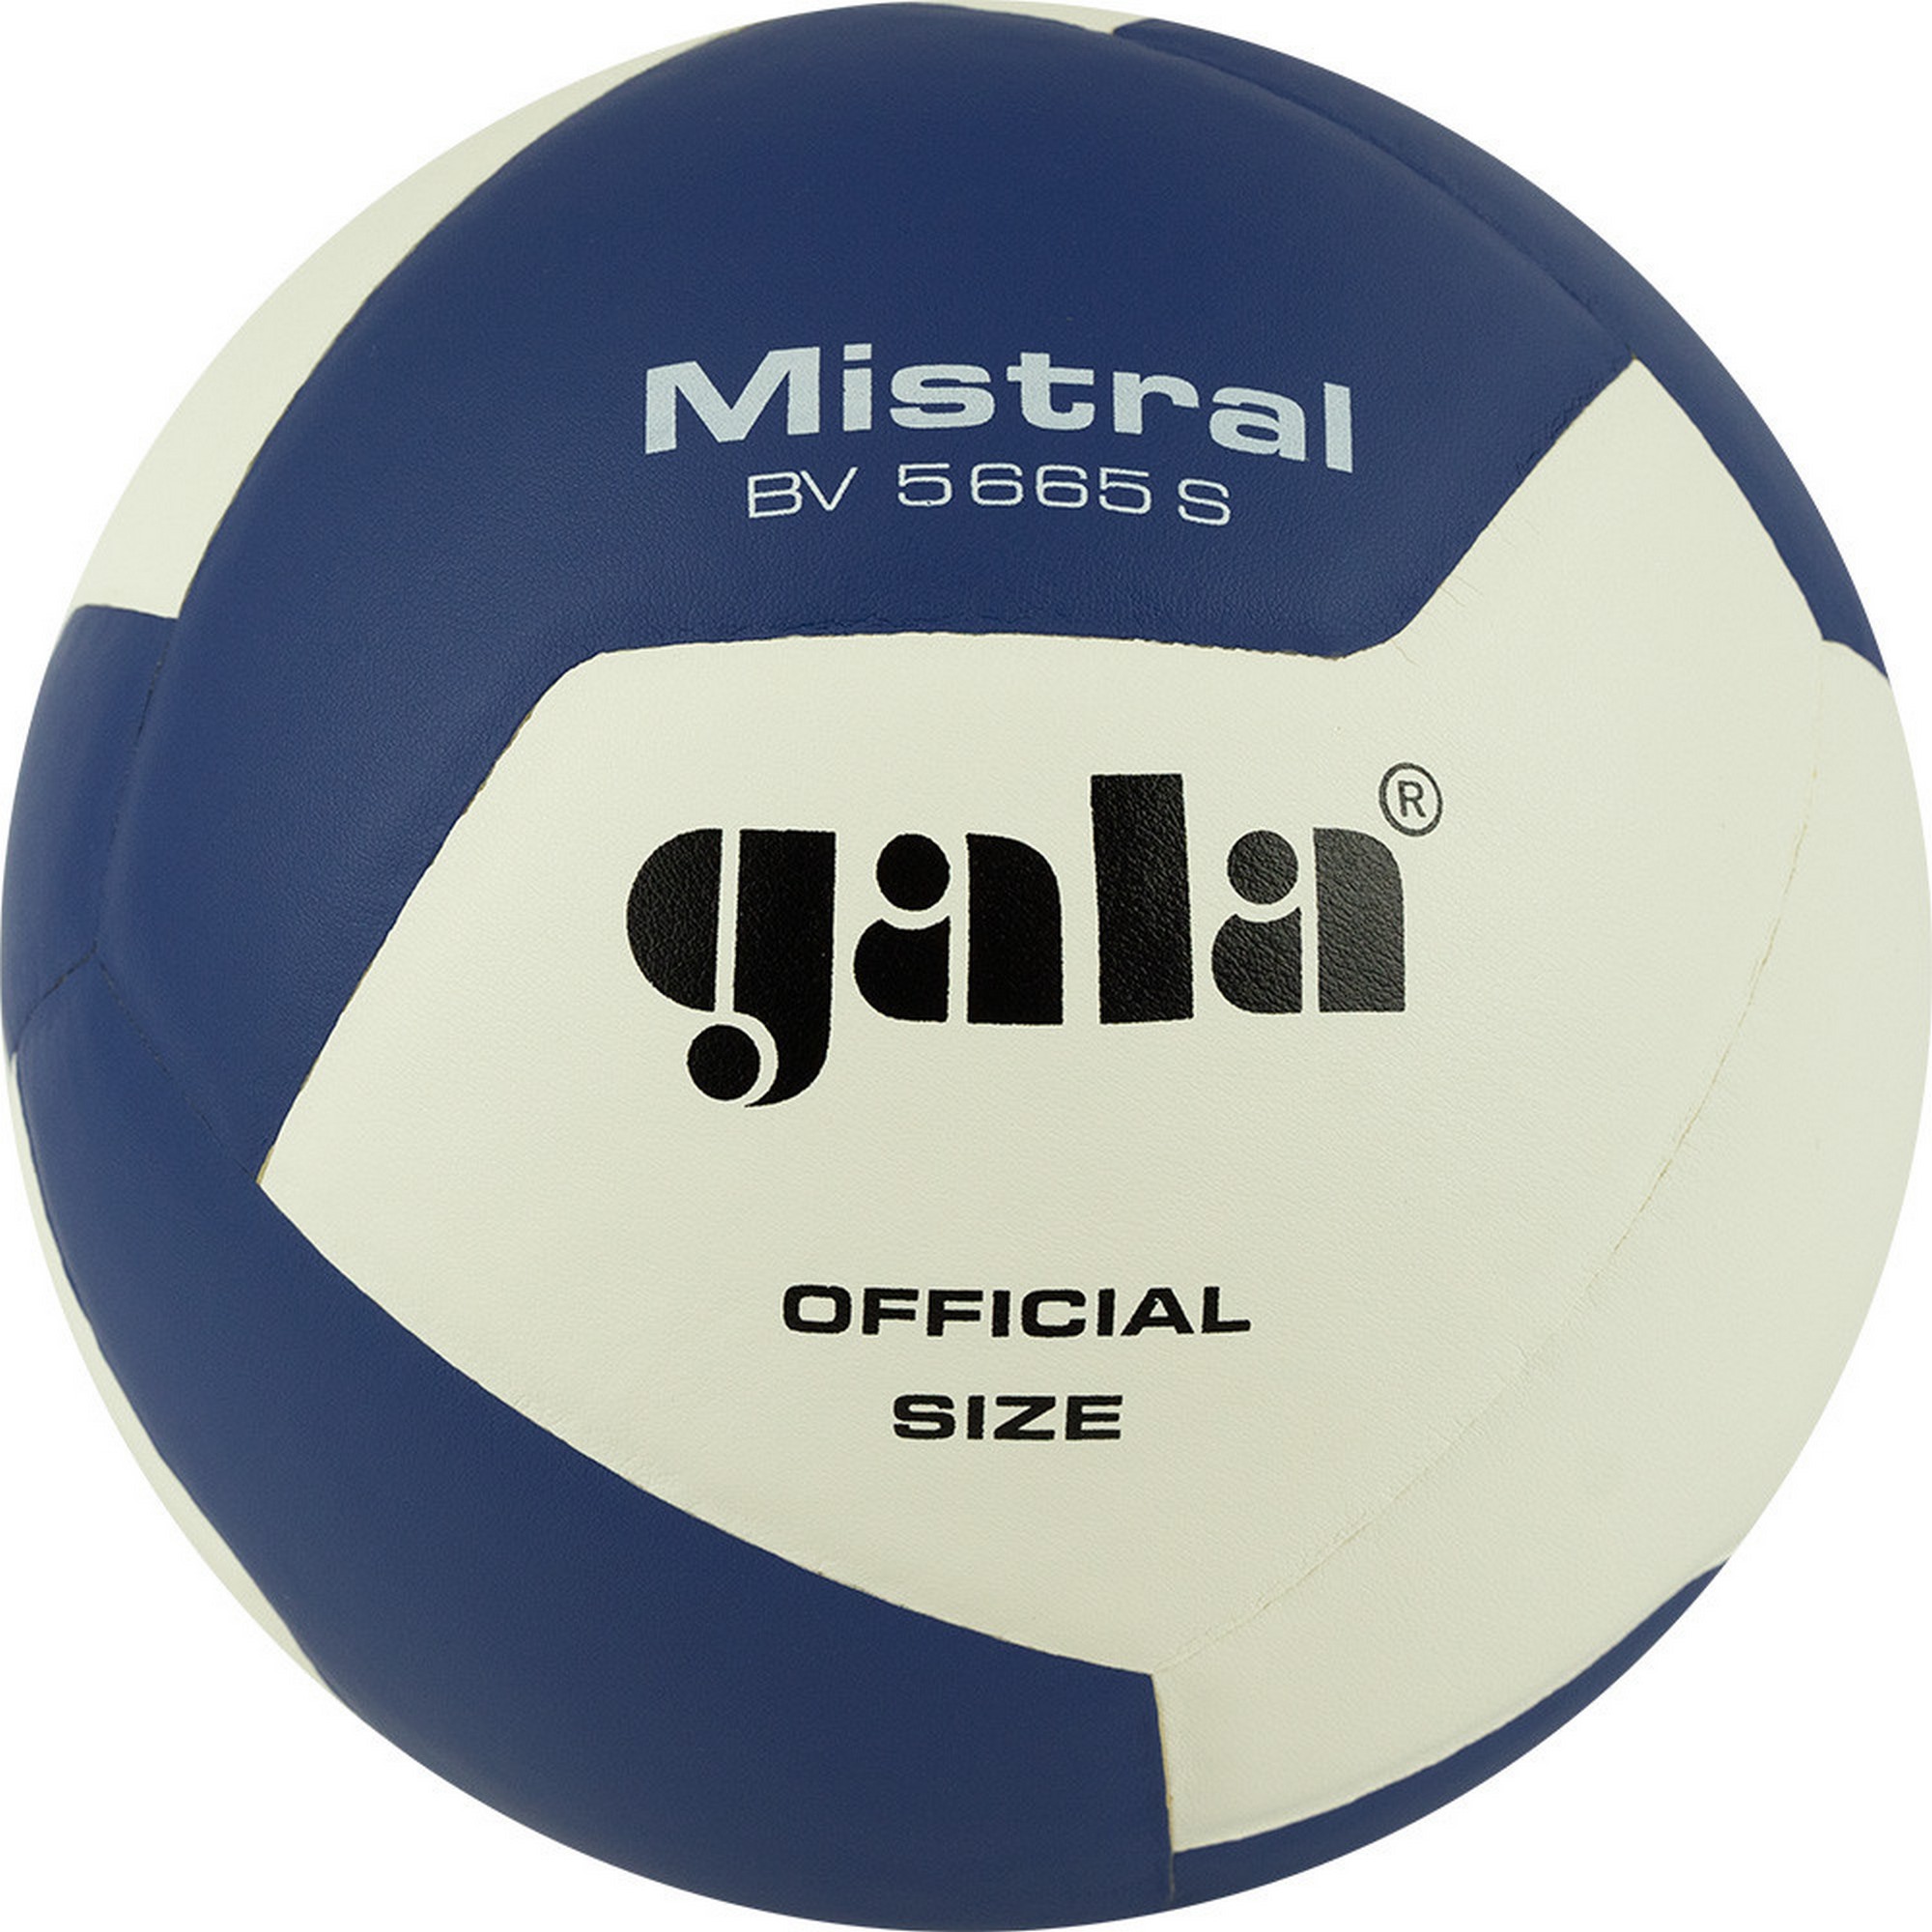 Купить Мяч волейбольный Gala Mistral 12 BV5665S р. 5,